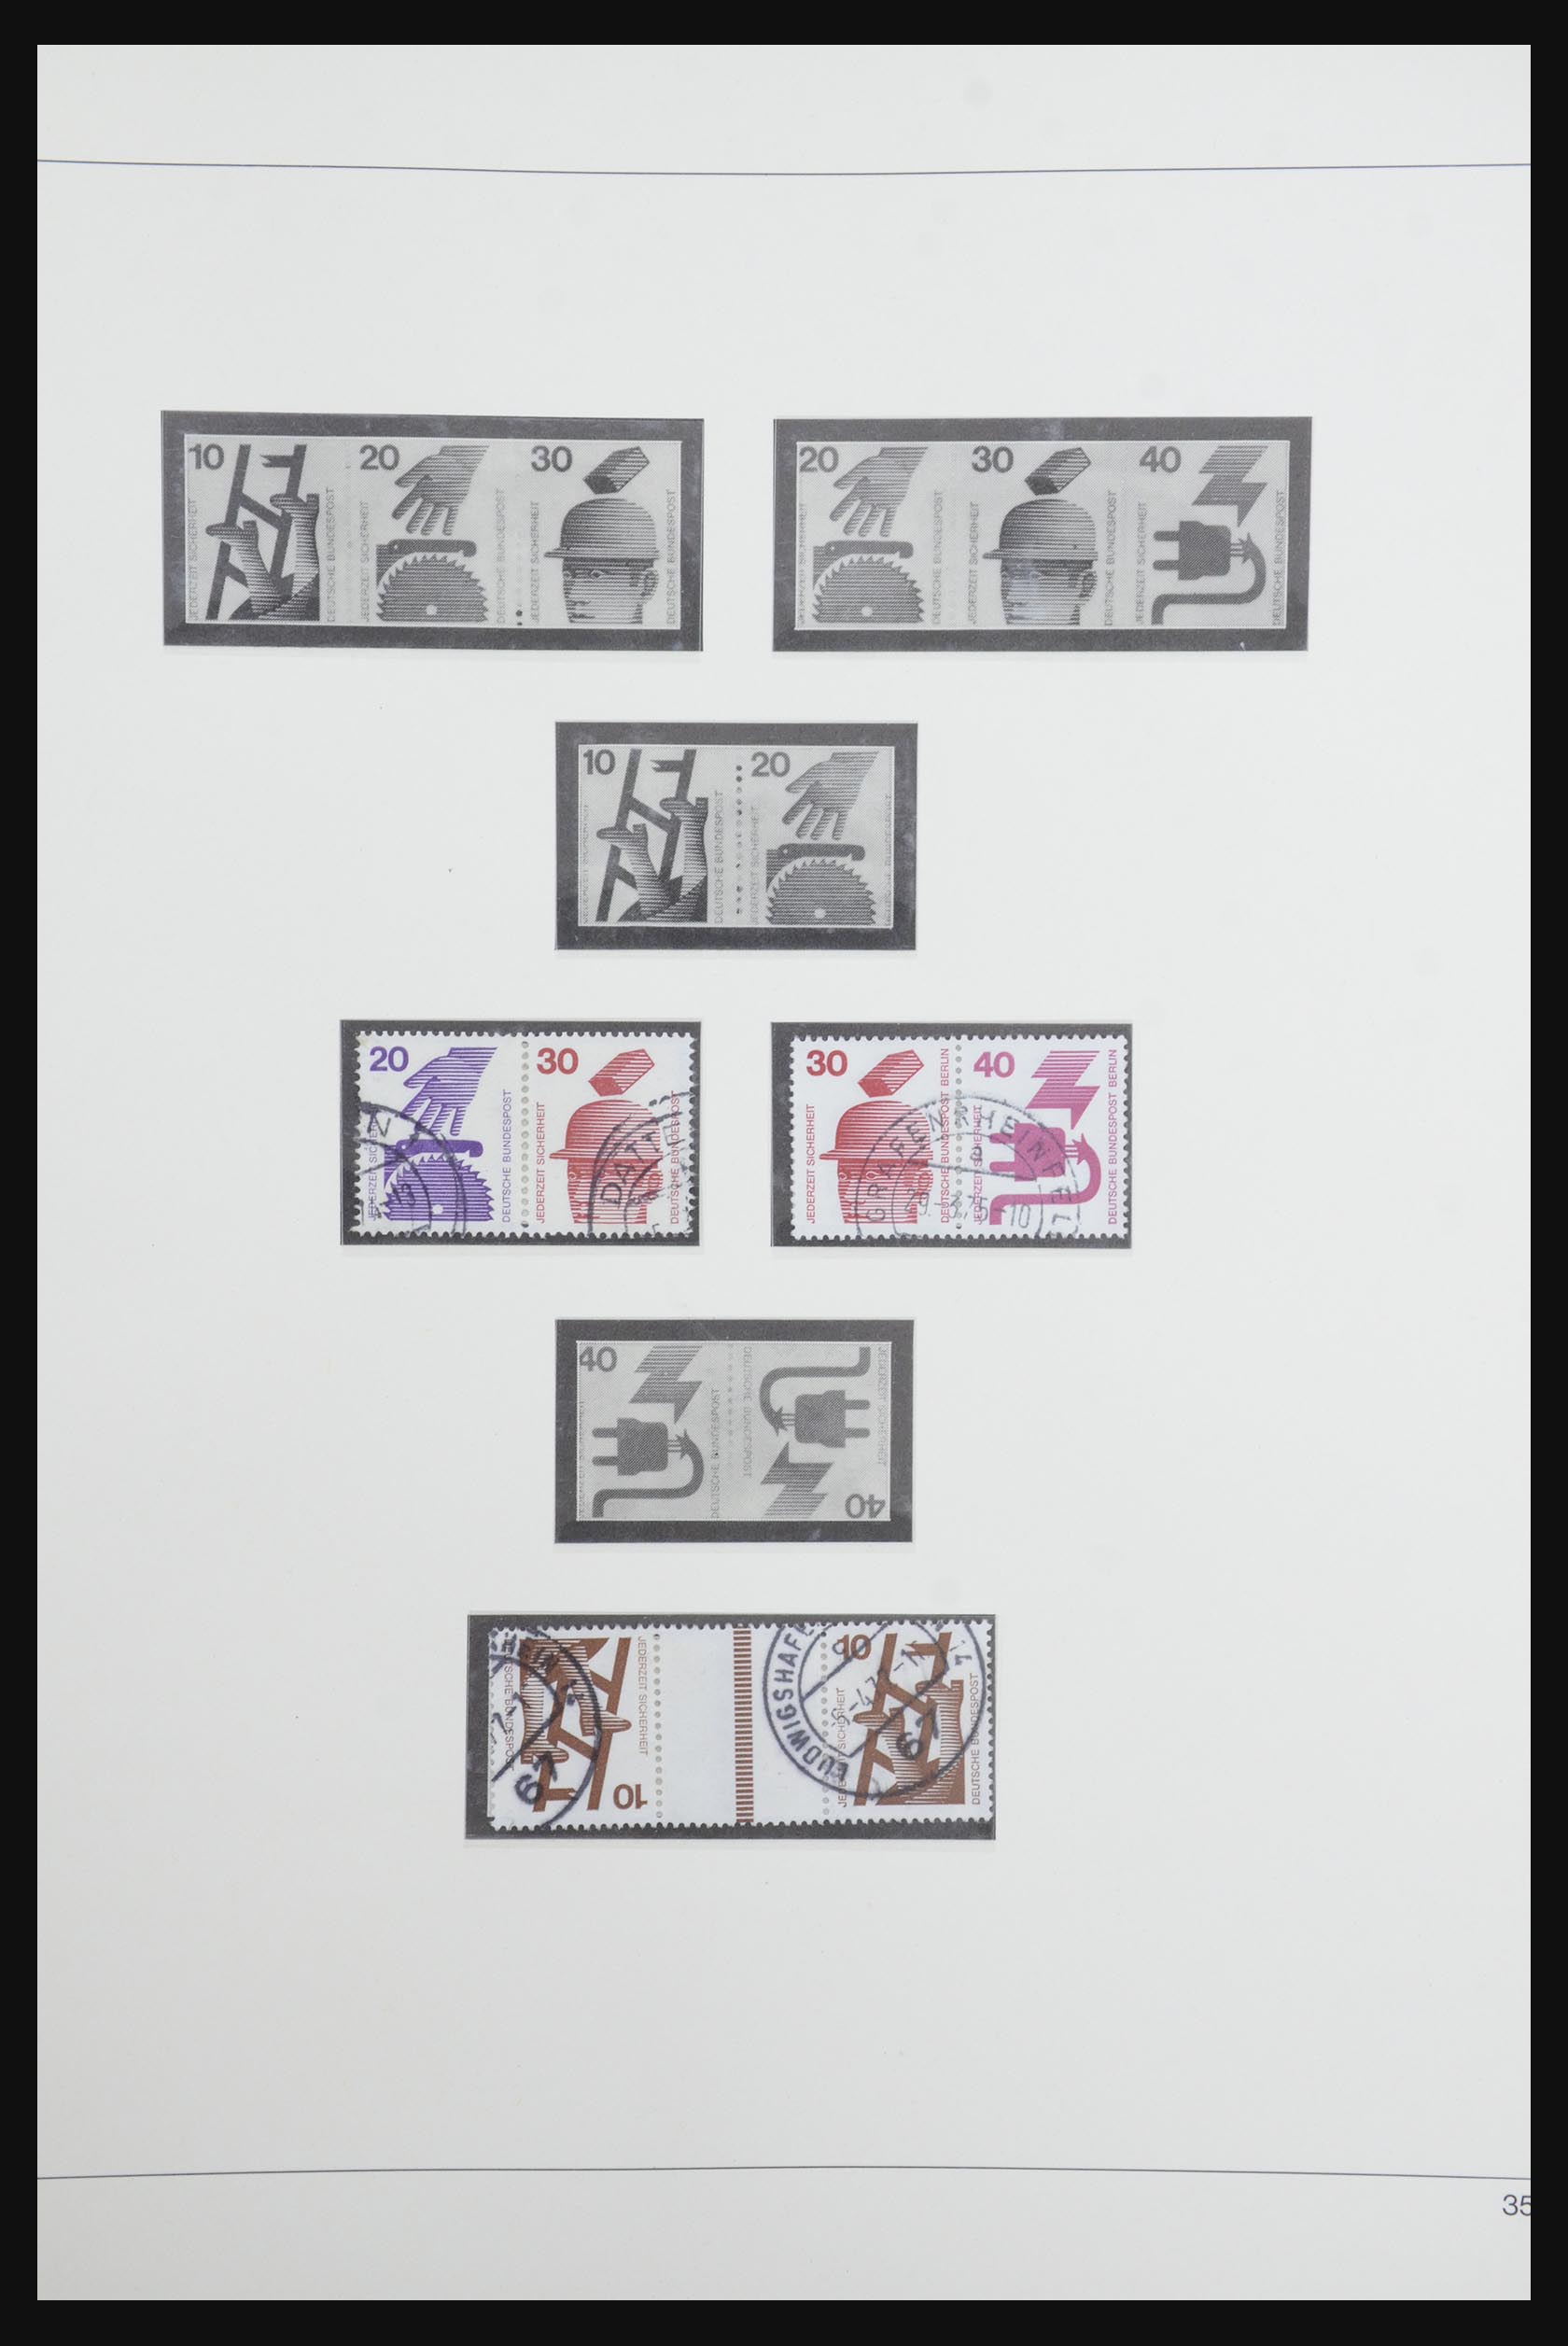 31842 050 - 31842 Bundespost combinations 1951-2003.